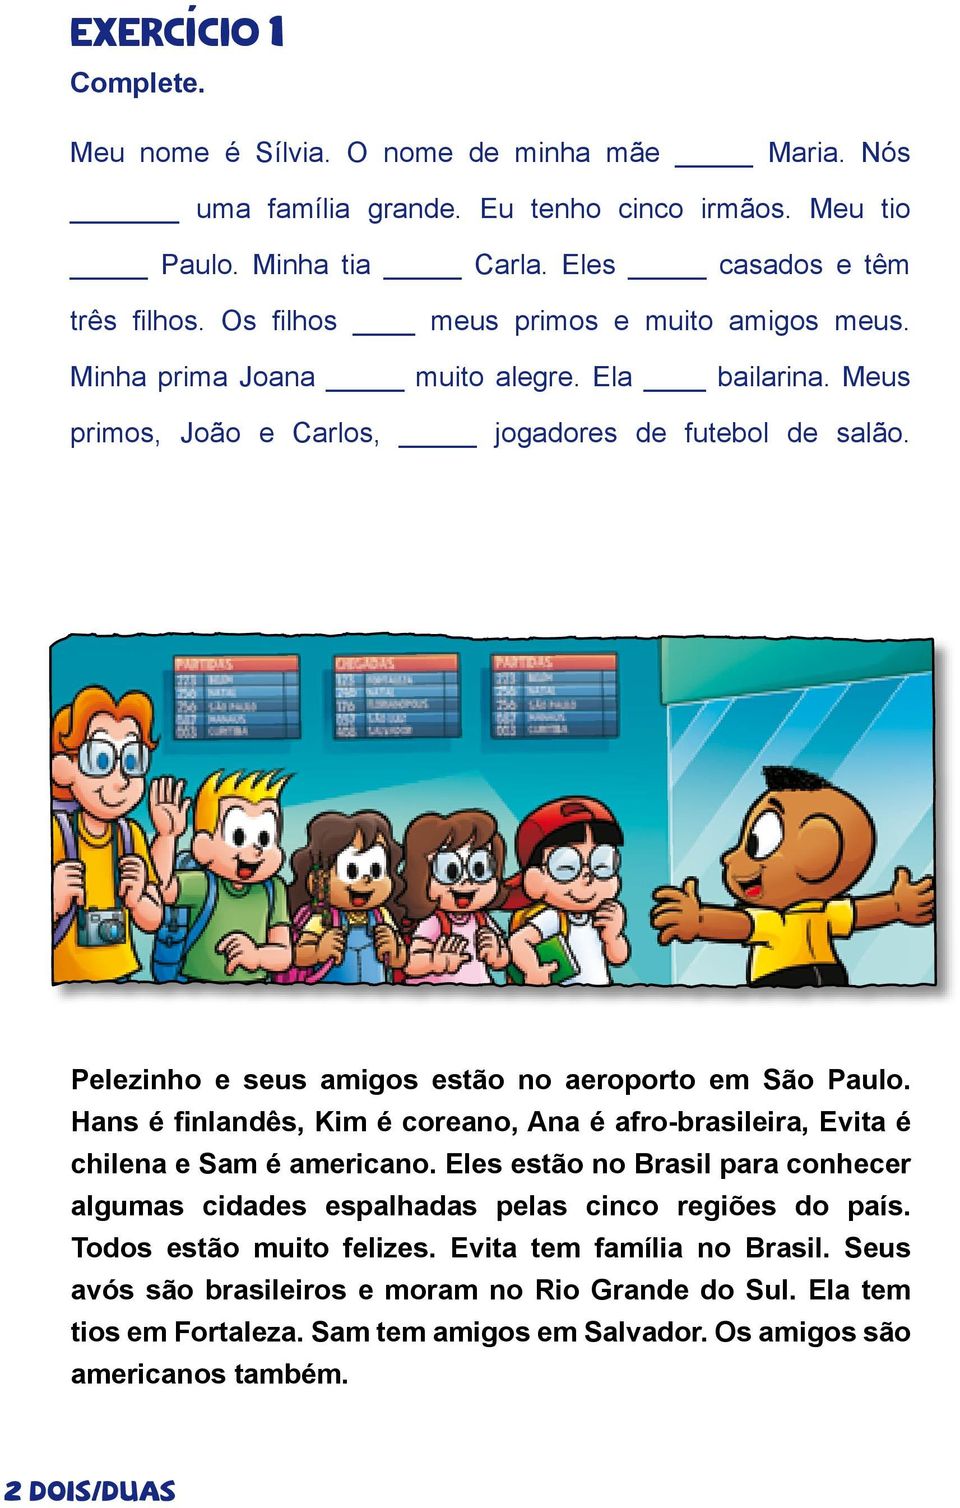 Pelezinho e seus amigos estão no aeroporto em São Paulo. Hans é finlandês, Kim é coreano, Ana é afro-brasileira, Evita é chilena e Sam é americano.